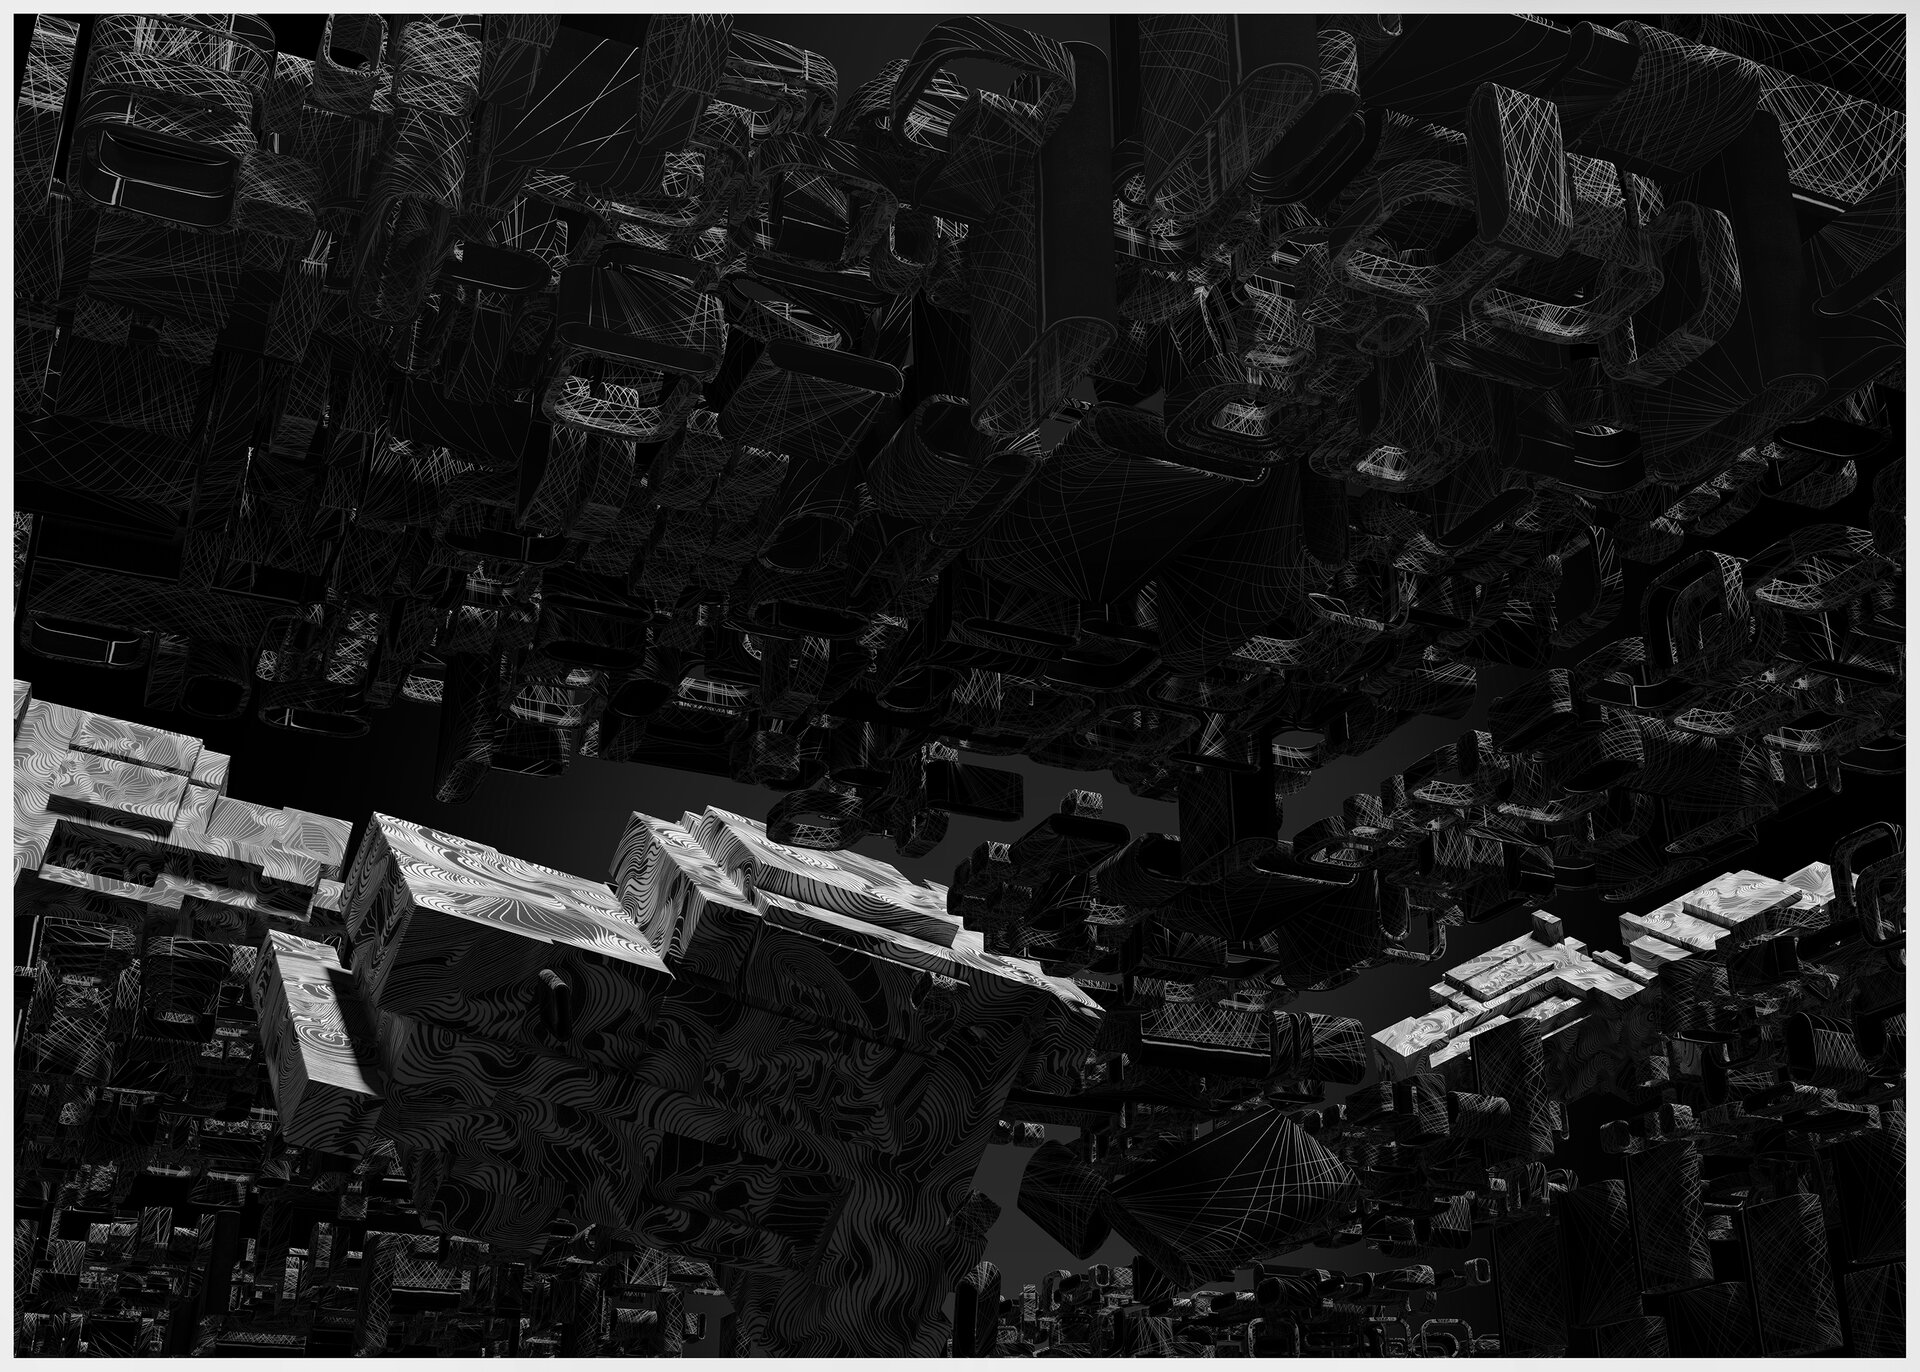 Ilustracja przedstawia obraz Jakuba Jaszewskiego „XRYT‑002”. Ukazuje geometryczne elementy ujęte perspektywiczne z różnych punktów widzenia, z wolną przestrzenią w środkowej części. Kąt widzenia sprawia, że elementy tworzą trójwymiarowy obraz. Wśród nich wyróżniają się białe kształty we wzory.